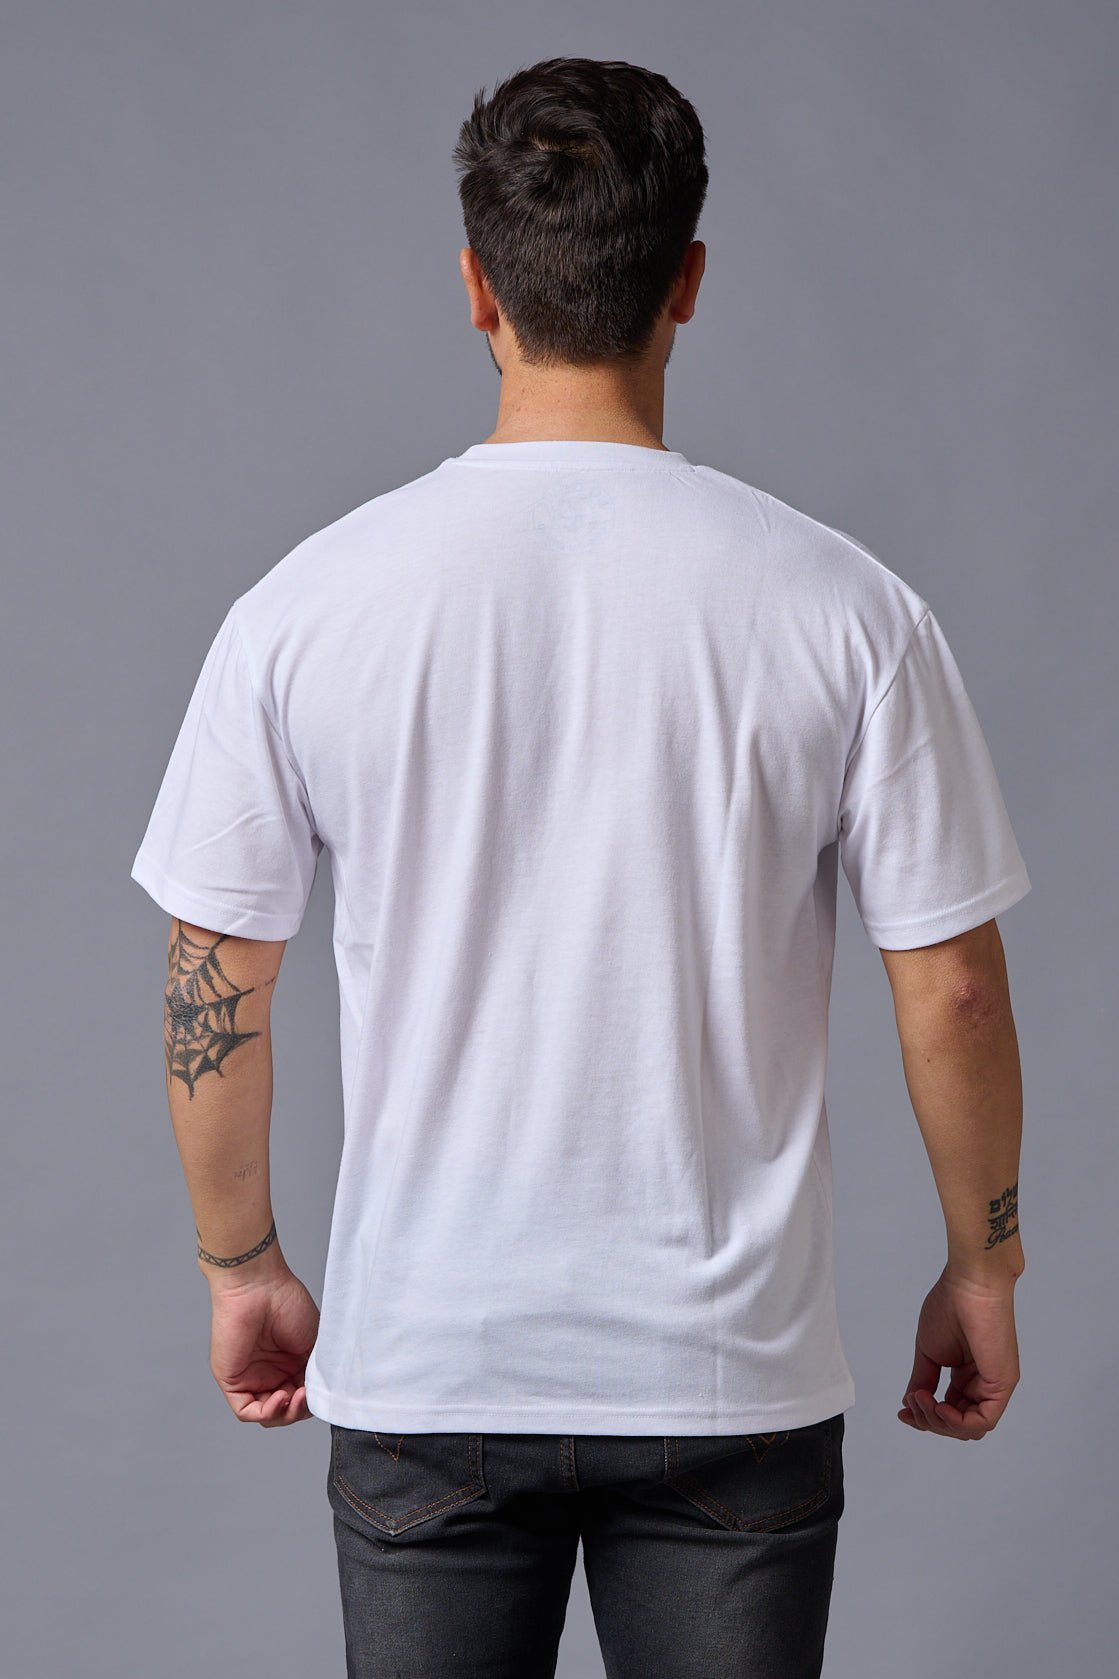 Devil Since 2020 (in Black) Printed White Oversized T-Shirt for Men - Go Devil